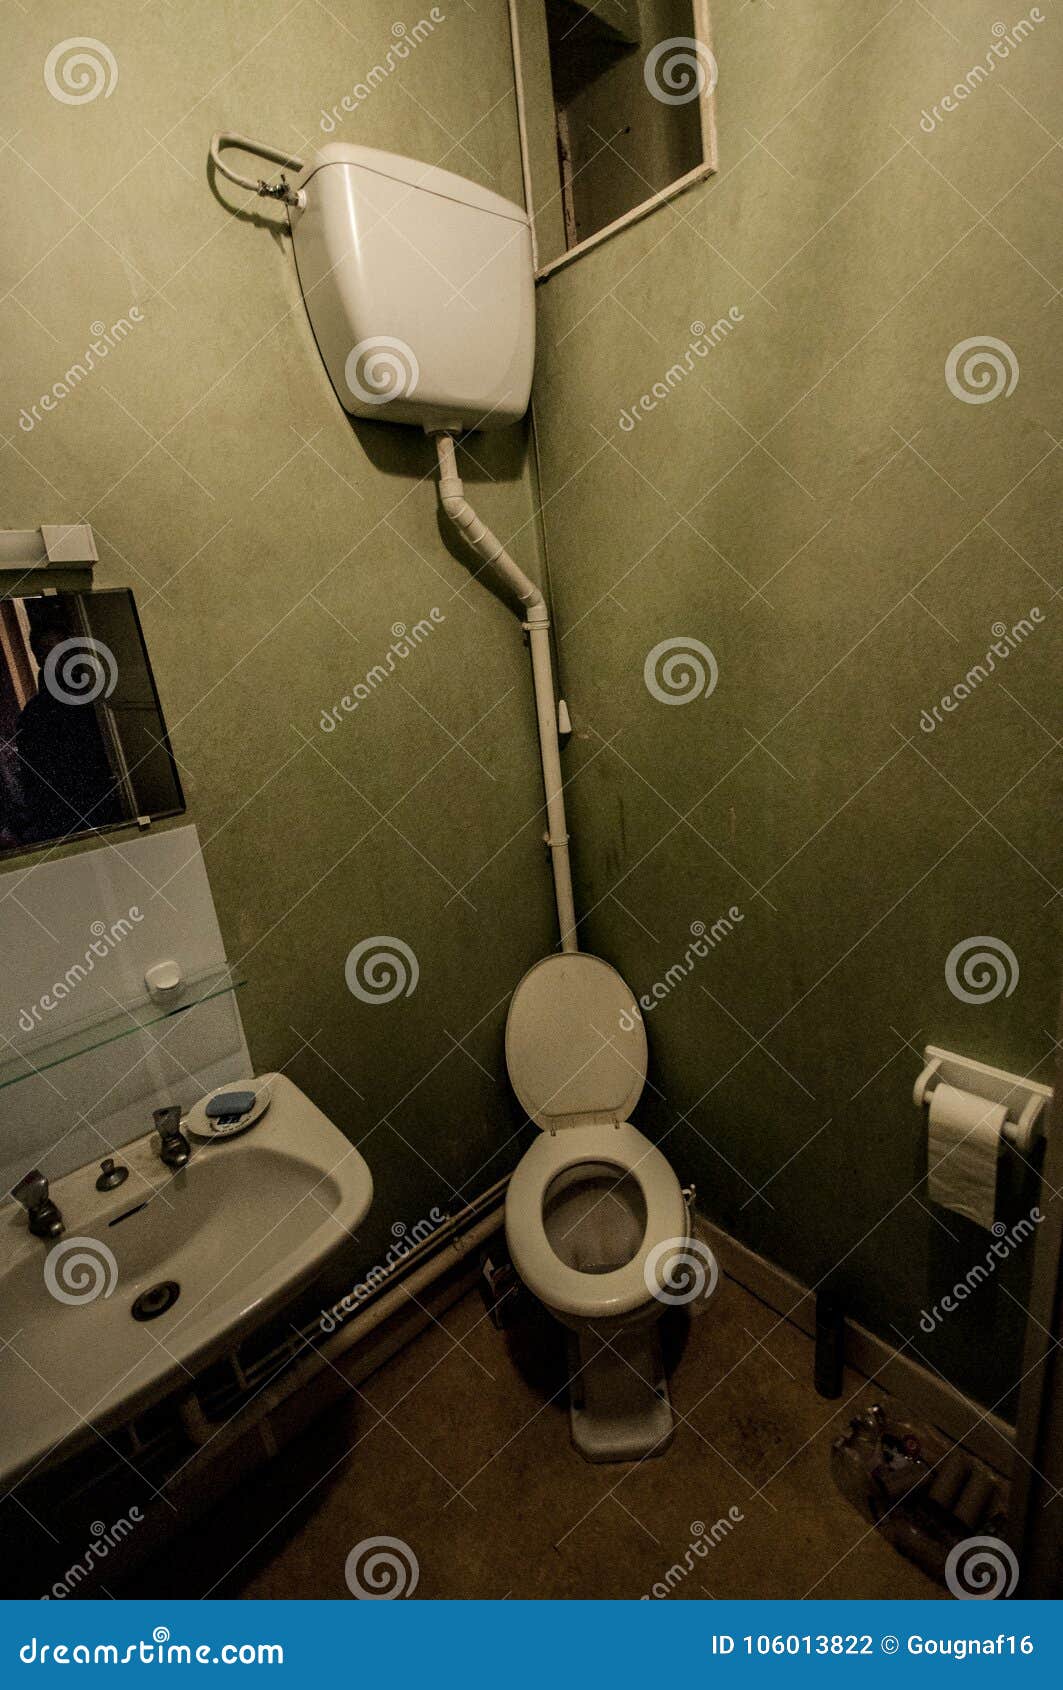 francaise dans les toilettes nude photo